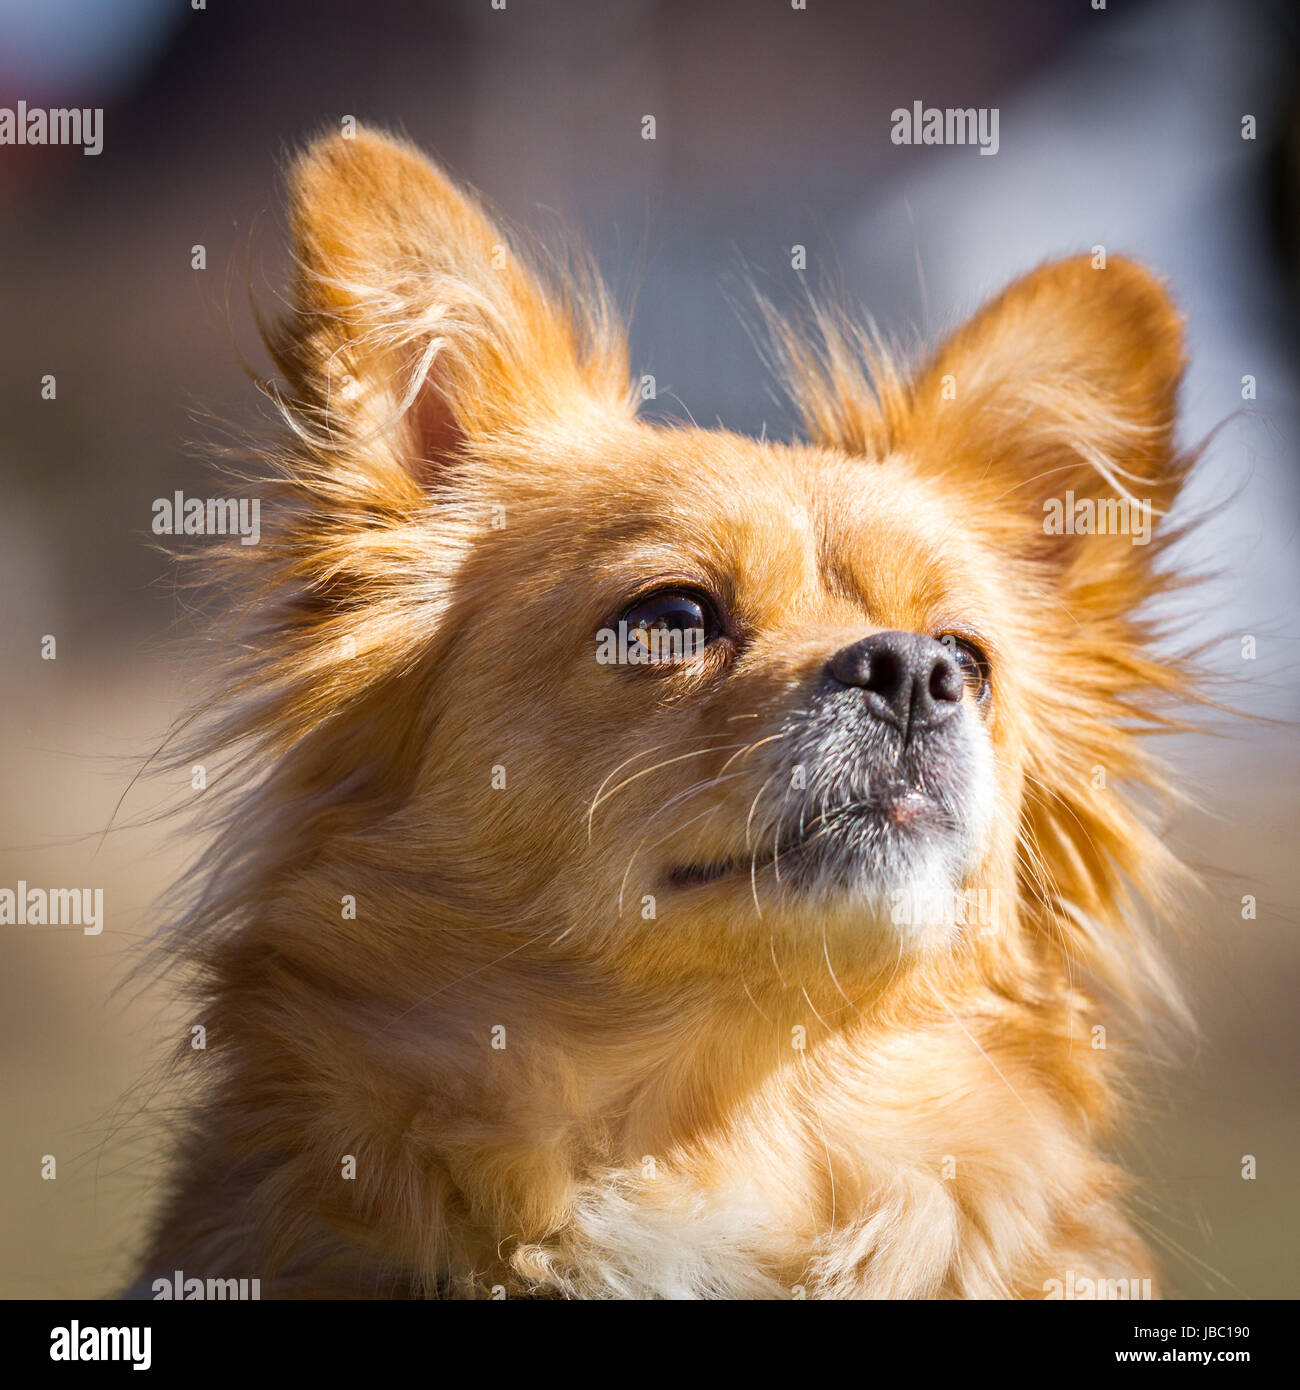 Ein Kleiner Hund schaut sehr aufmerksam mit stehenden Ohren leicht nach  oben. Hunde Portrait im Sonnenschein Stock Photo - Alamy